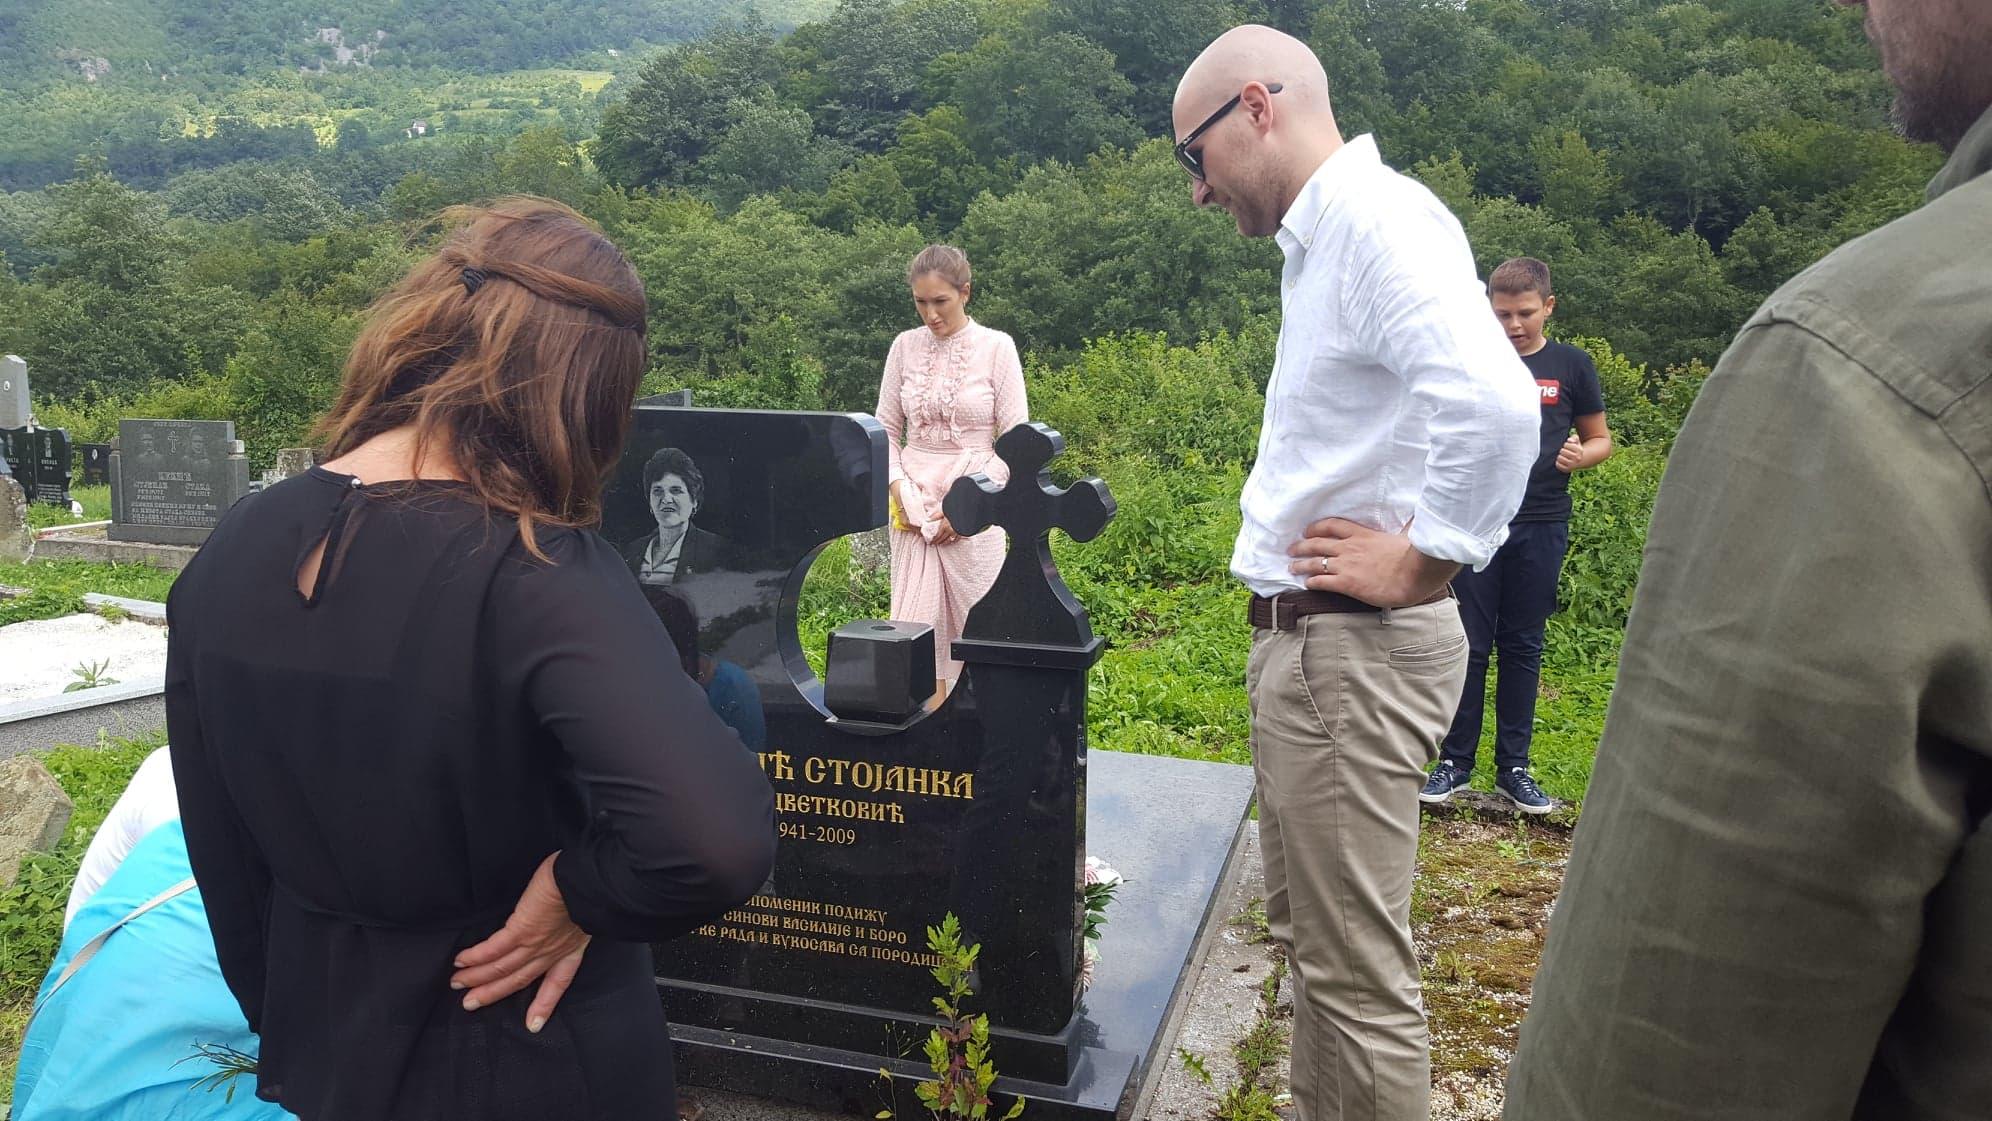 Preživjeli članovi porodice Klanco na grobu Vukosavine majke: Pobijedila je ljubav, a ne mržnja i zlo - Avaz